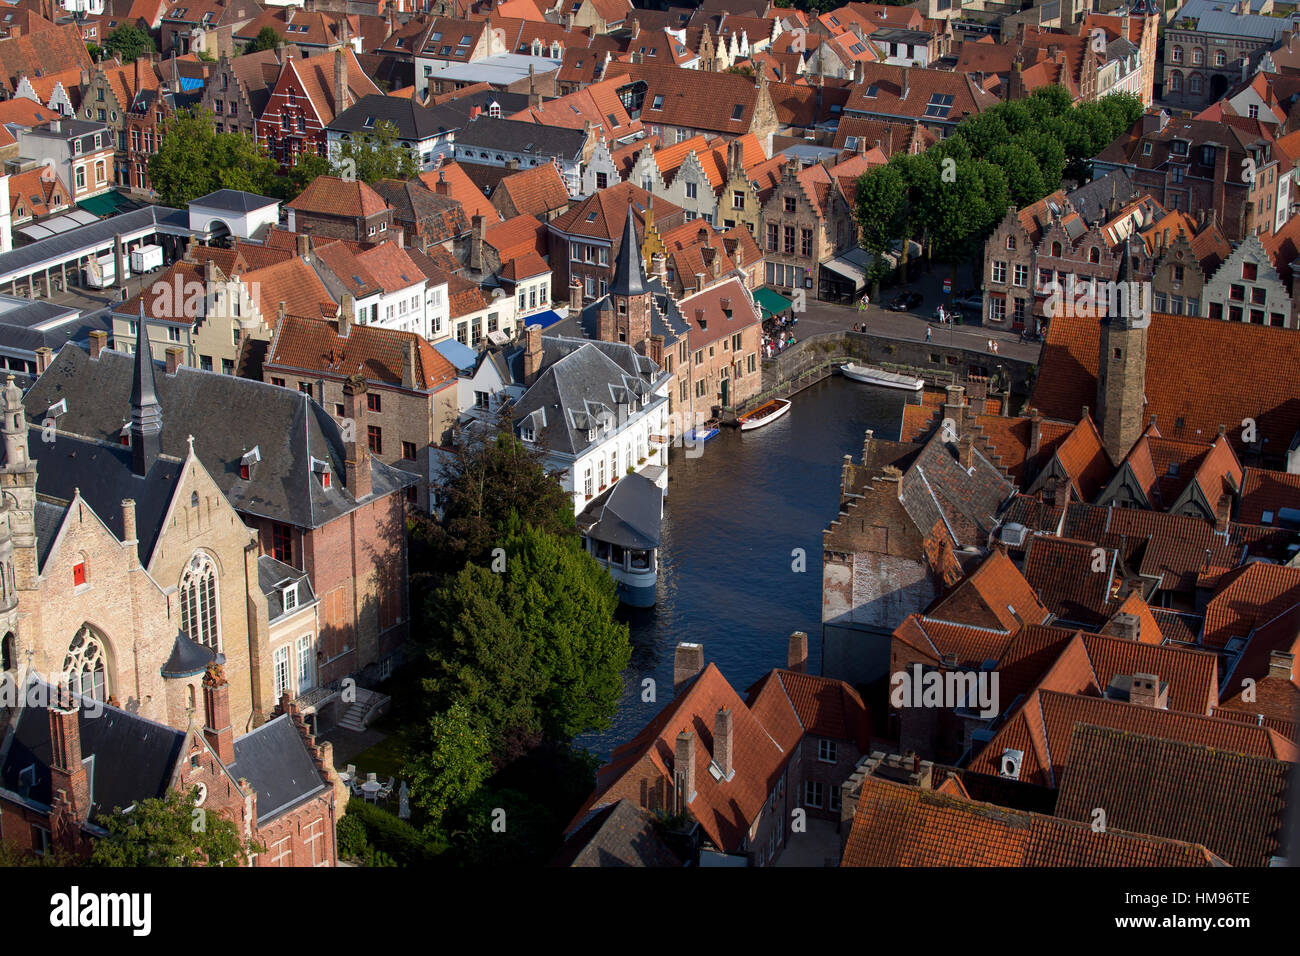 Rozenhoedkaai seen from the top of Belfry Tower (Belfort Tower), Bruges, West Flanders, Belgium Stock Photo